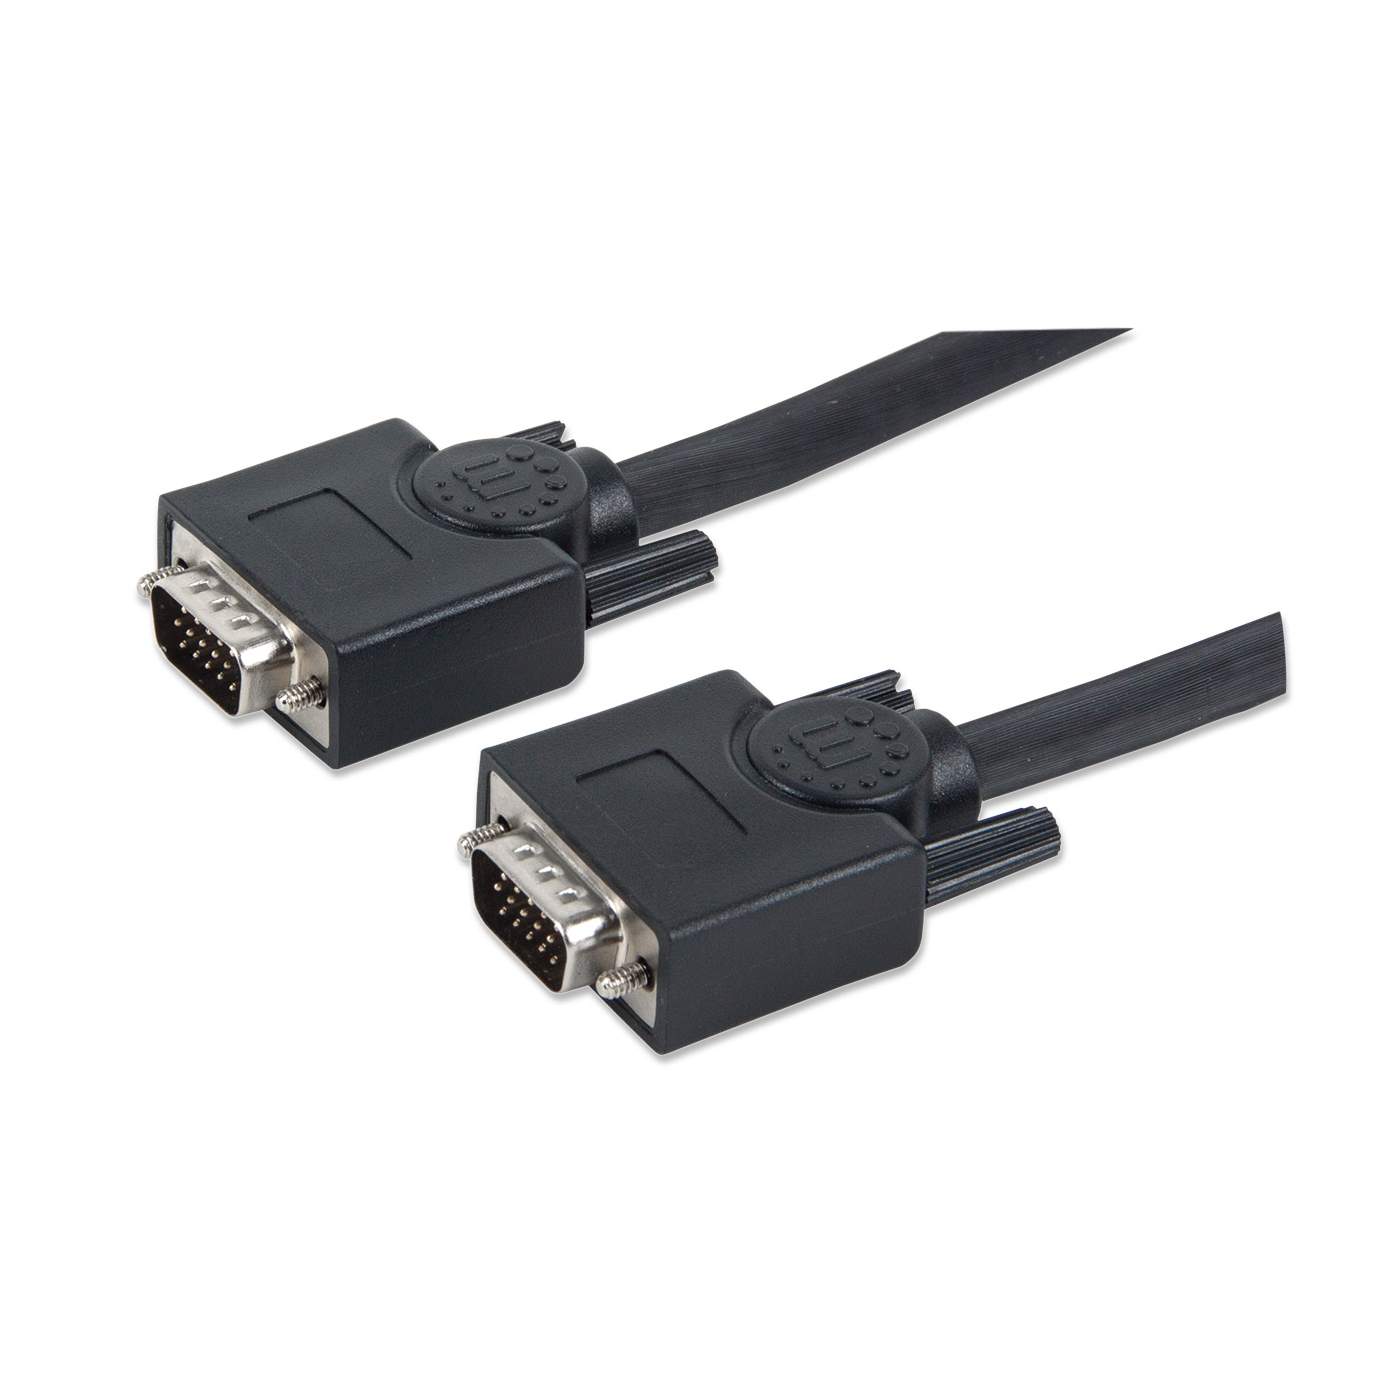 372978 Cable SVGA Macho-Macho de 7.5m; Completamente blindado para reducir la interferencia EMI para transmisiones de vídeo mejoradas. -